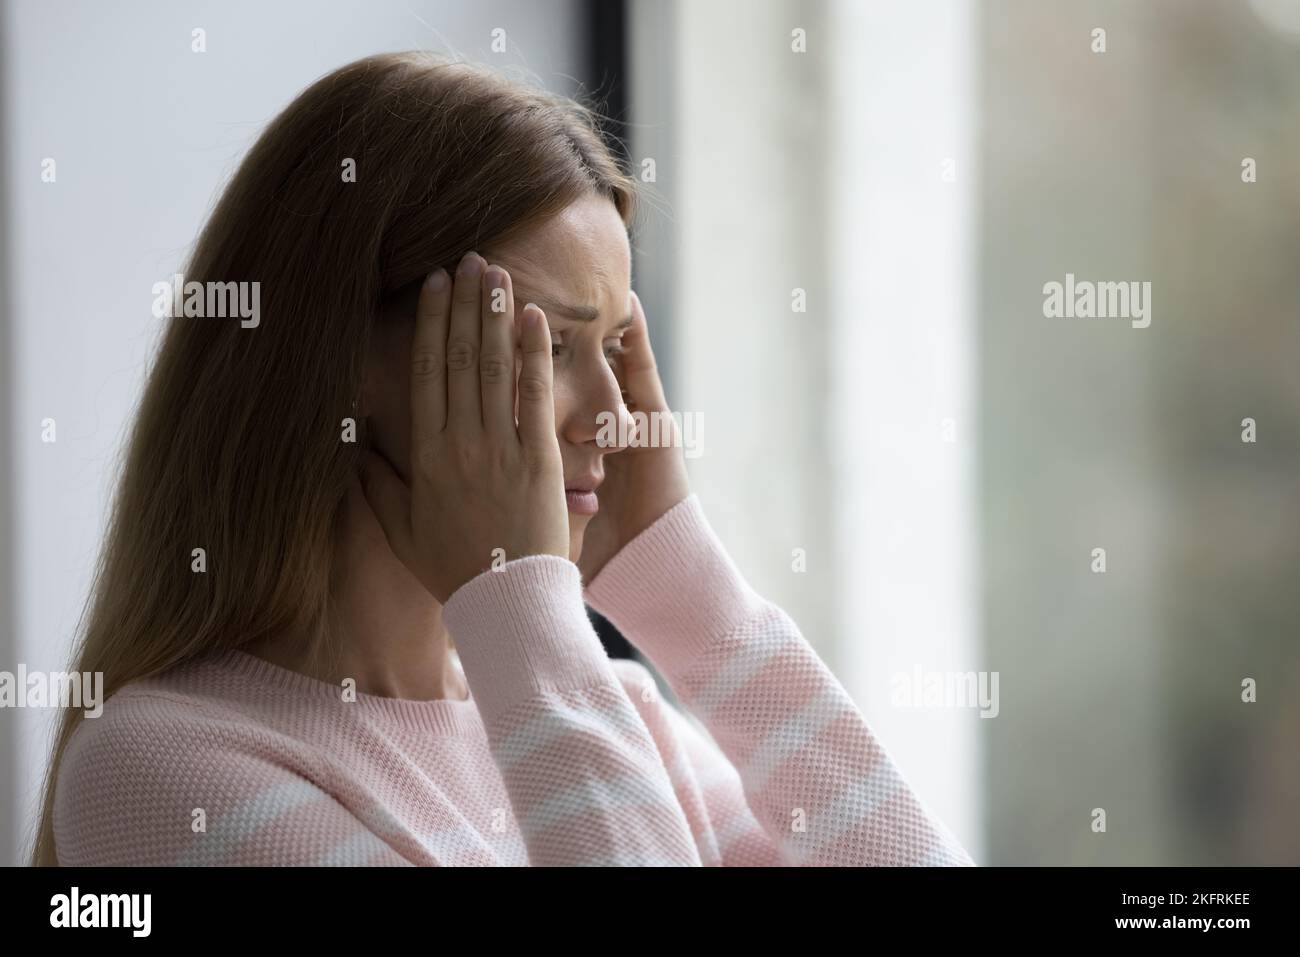 De cerca: Una mujer joven de pie en interiores sufre un fuerte dolor de cabeza Foto de stock